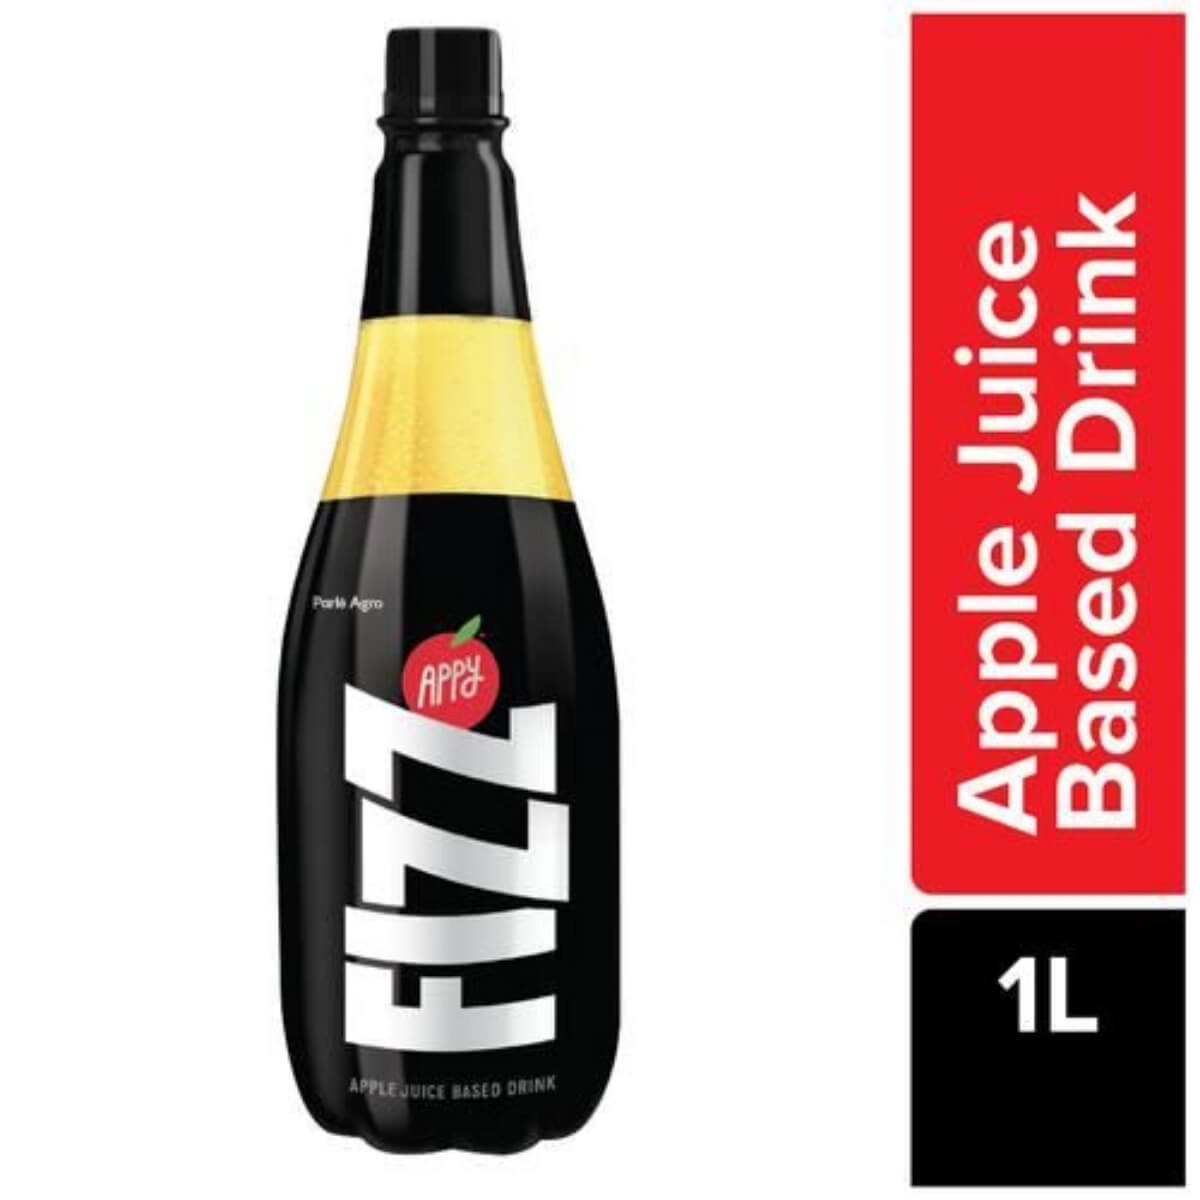 Appy fizz, apple juice based drink, 1 litre